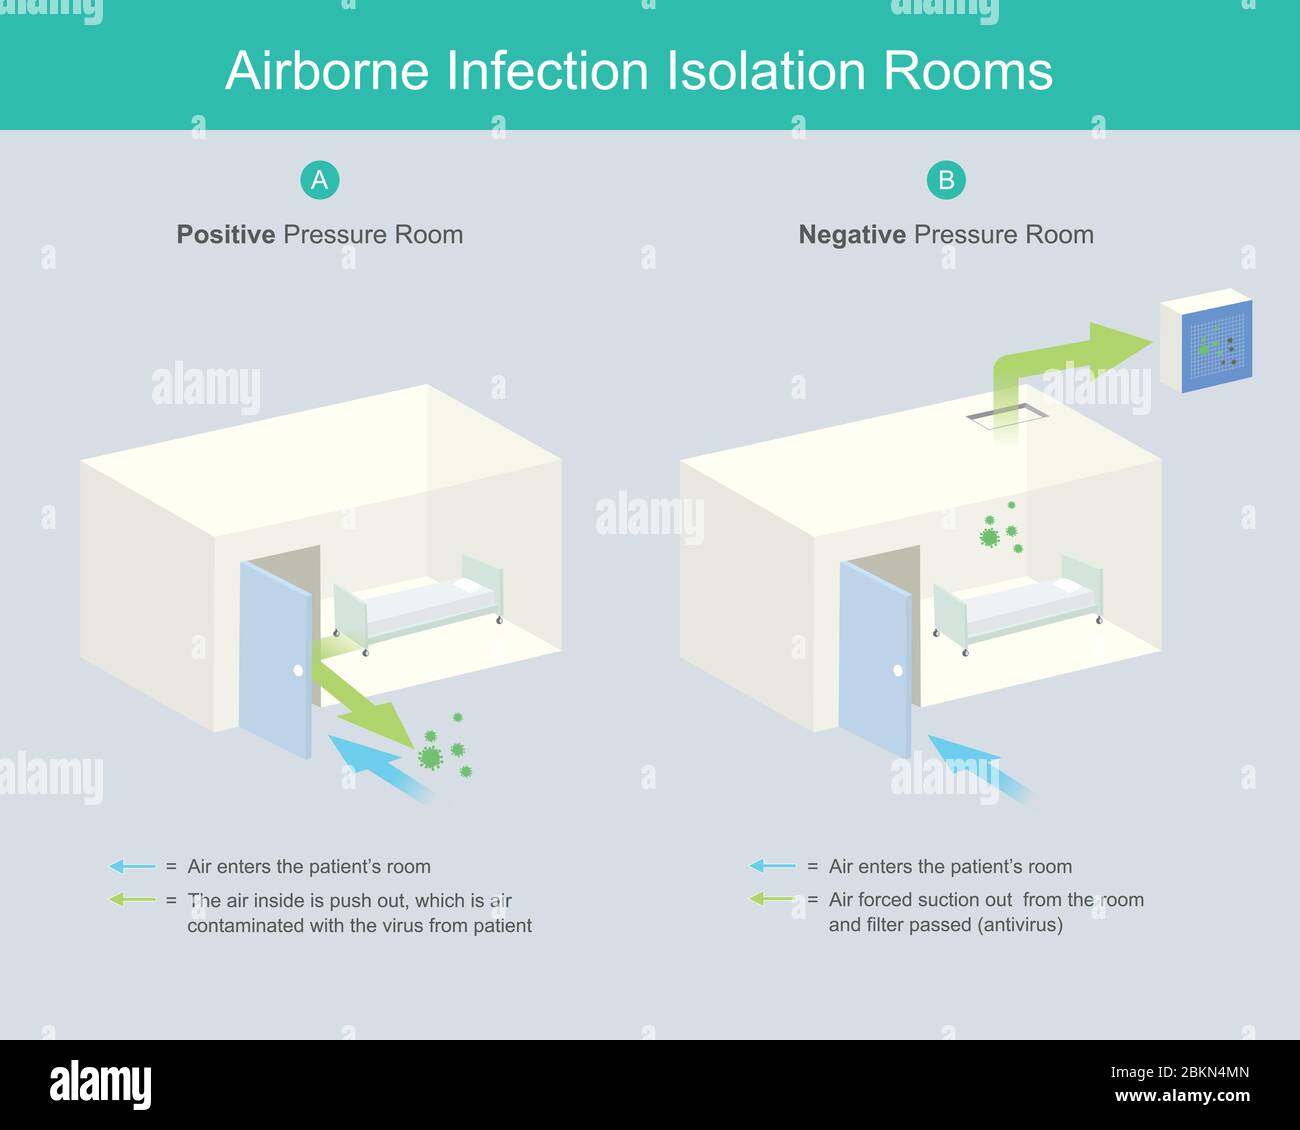 Räume Zur Isolierung Von Infektionen In Der Luft. Airborne Infection Isolation Rooms (AIIR) ist ein Kontrollraum unter Unterdruck, um zu verhindern, dass Luft Virus infiziert ist Stock Vektor